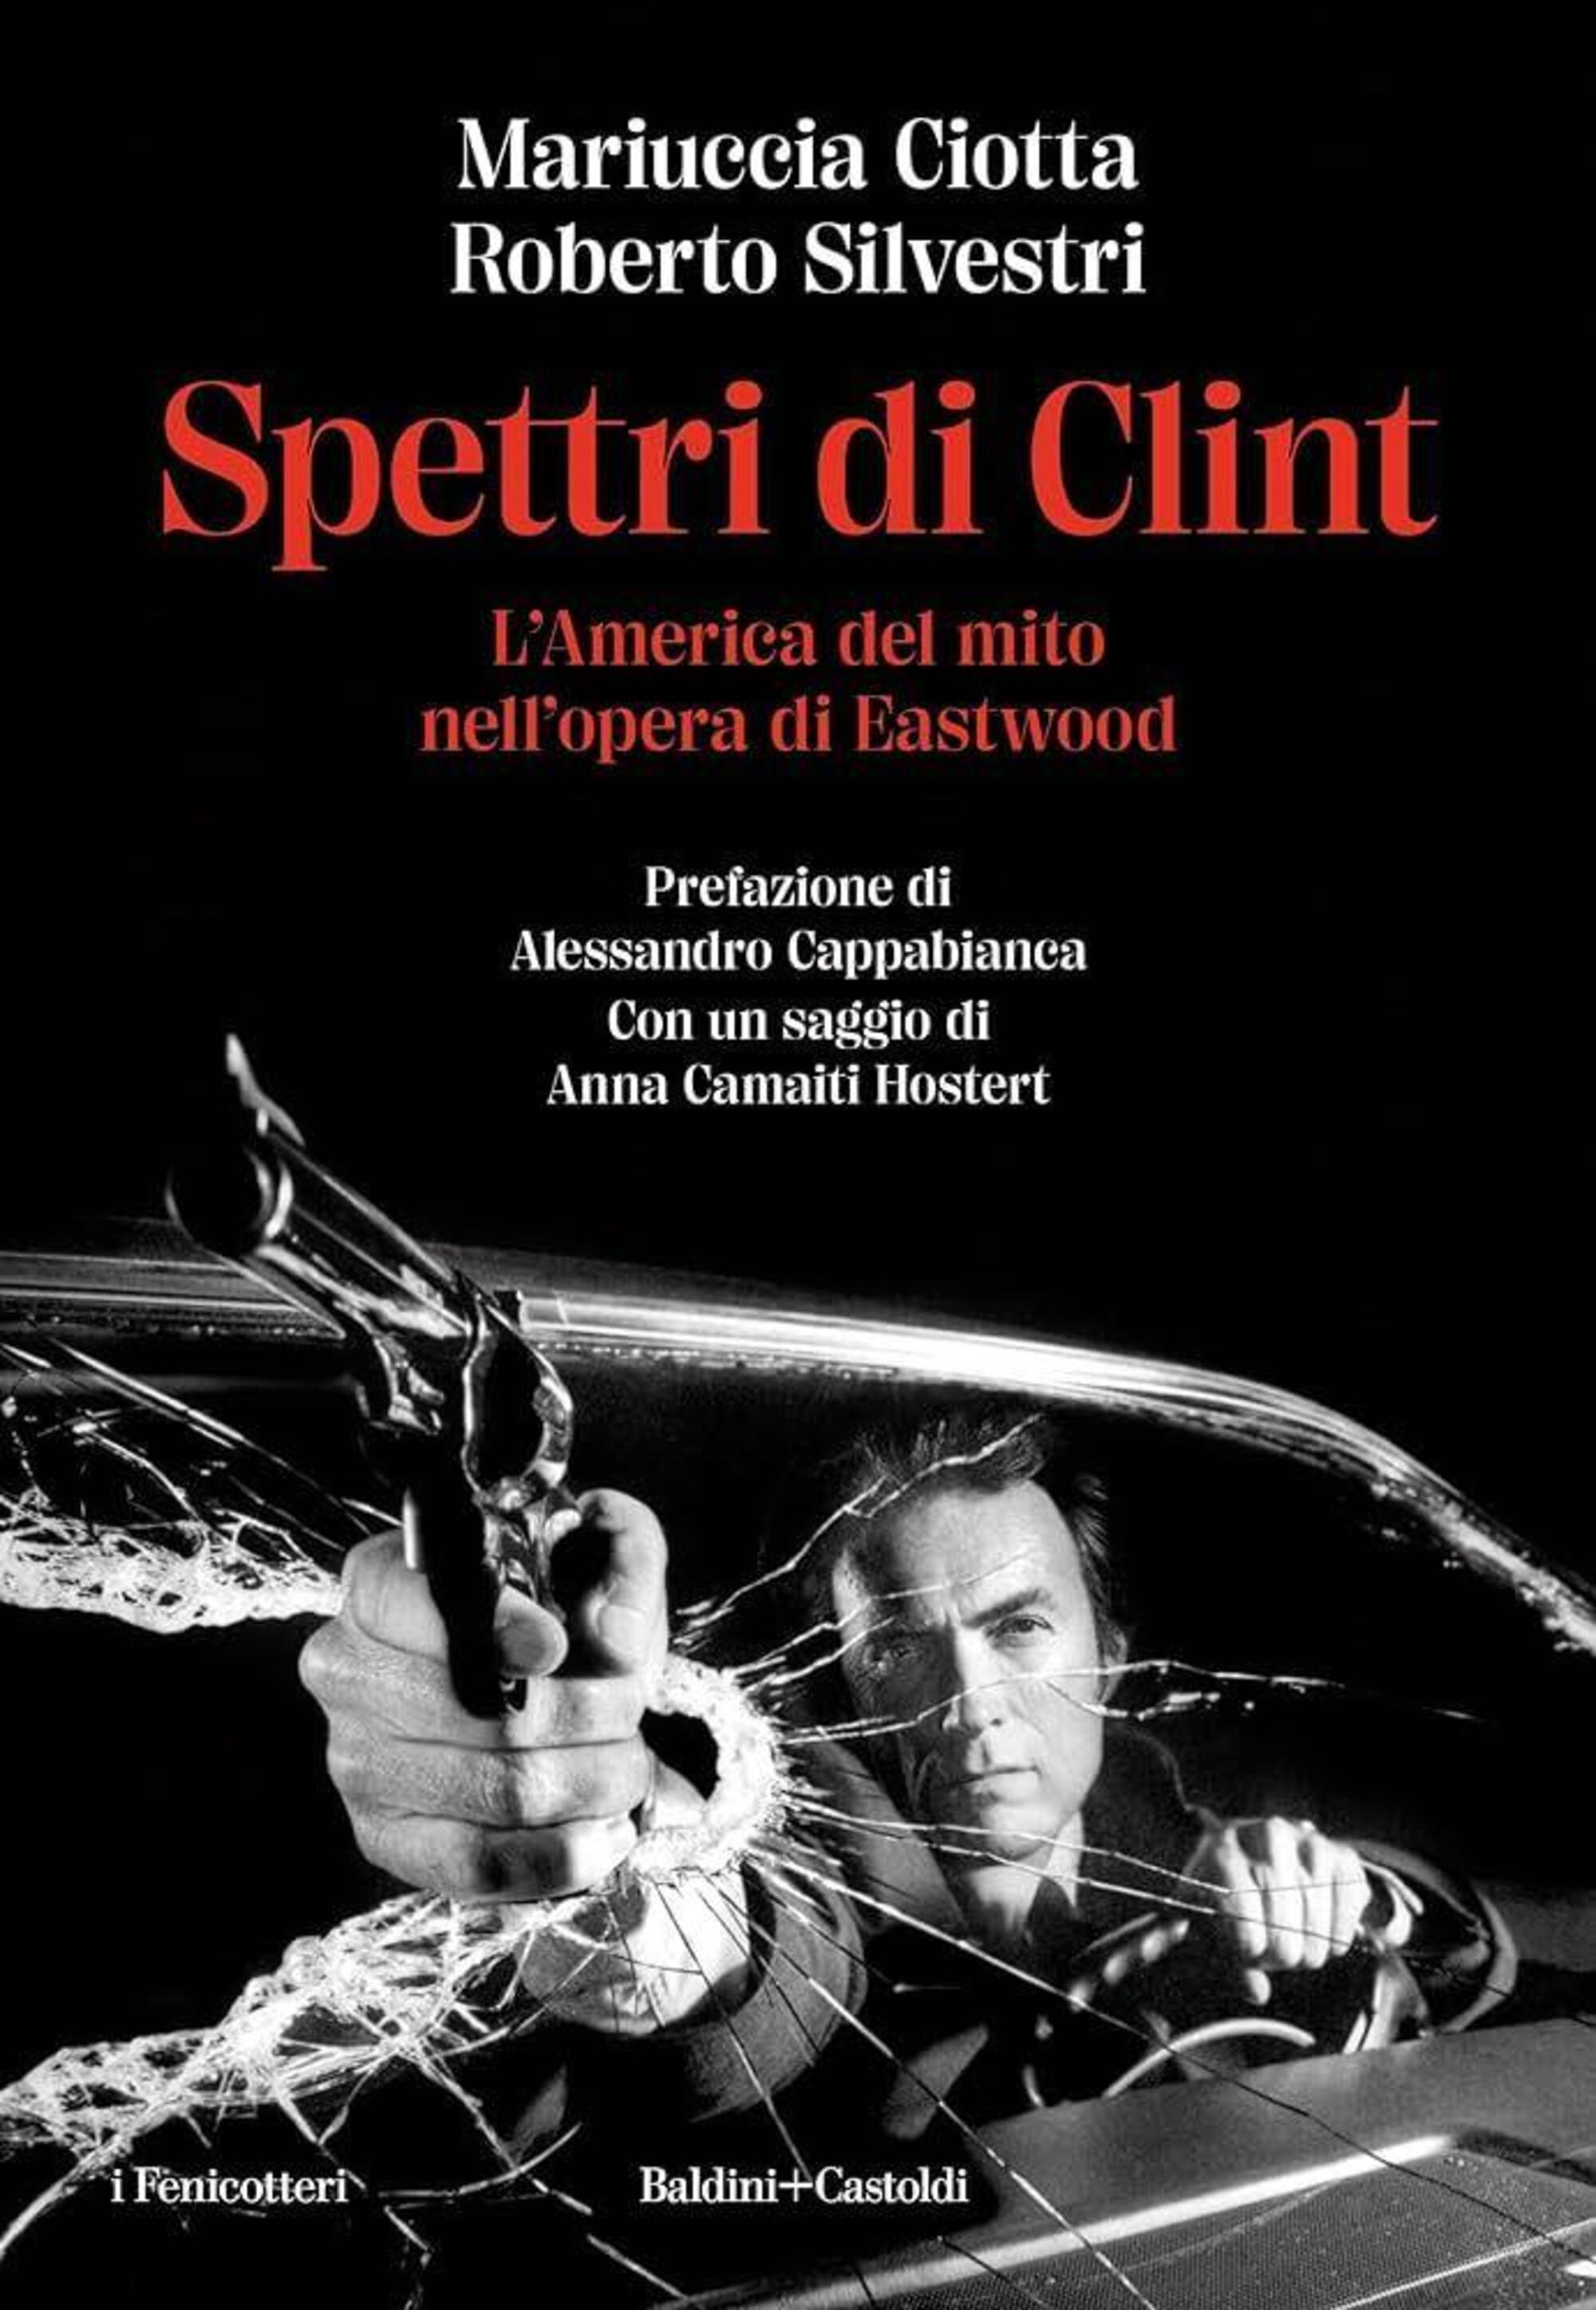 Mariuccia Ciotta e Roberto Silvestri, &ldquo;Spettri di Clint. L&rsquo;America del mito nell&rsquo;opera di Eastwood&rdquo; (Baldini+Castoldi 2023)